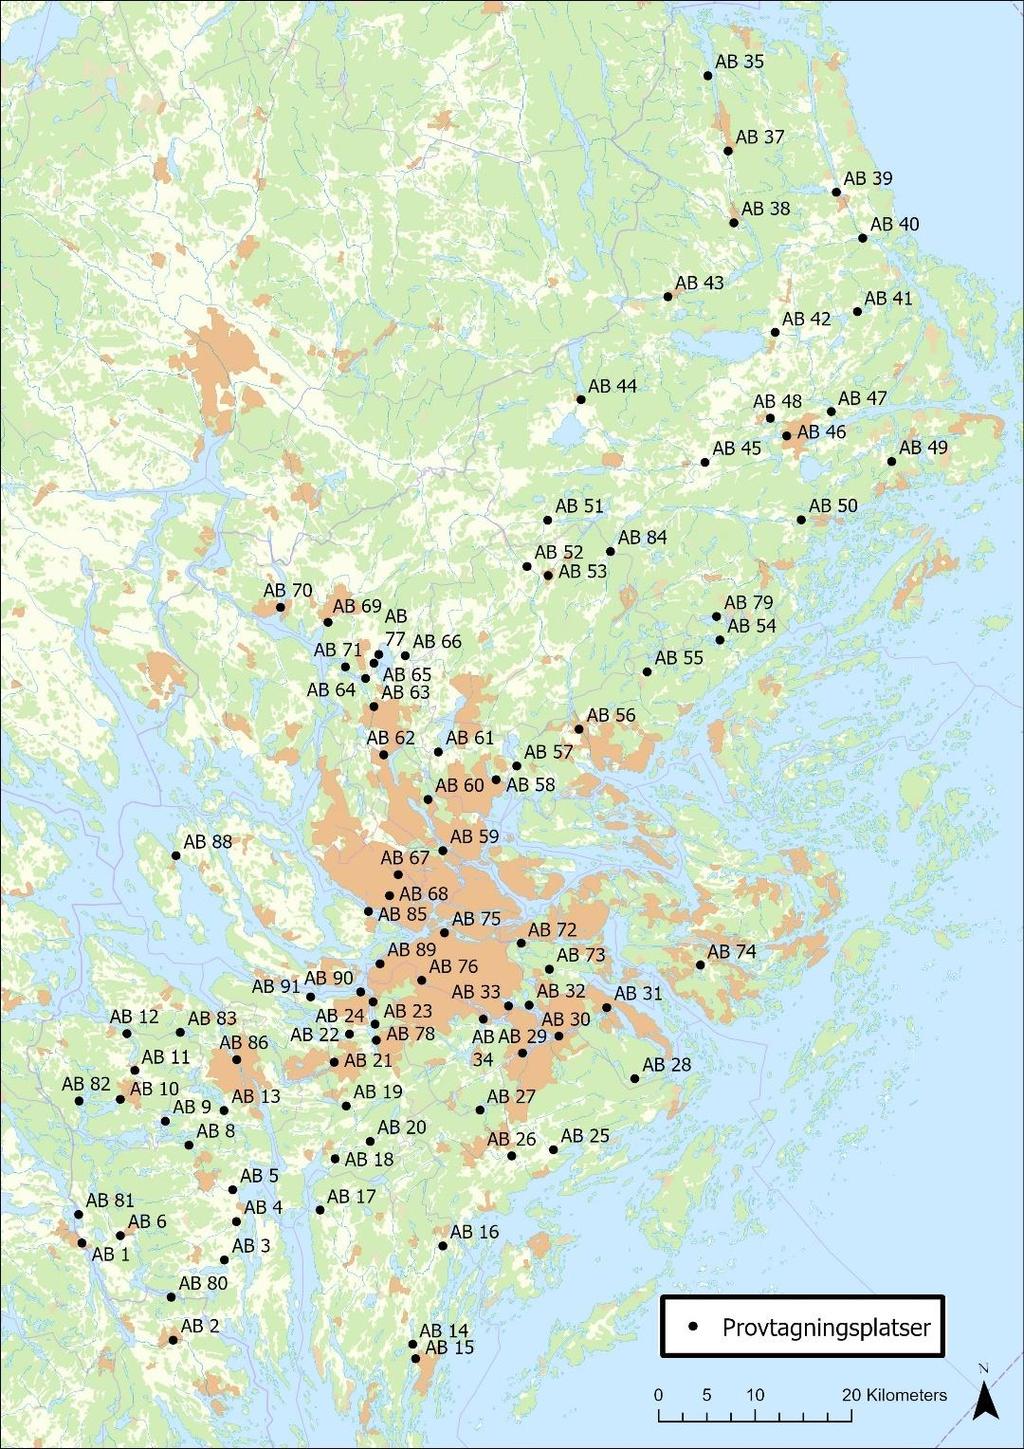 Figur 1. Kartan visar provtagningsplatser för ytvatten från sjöar och vattendrag (limniska miljöer) i och omkring Stockholms län med länsstyrelsens ID-nummer som används i denna undersökning.